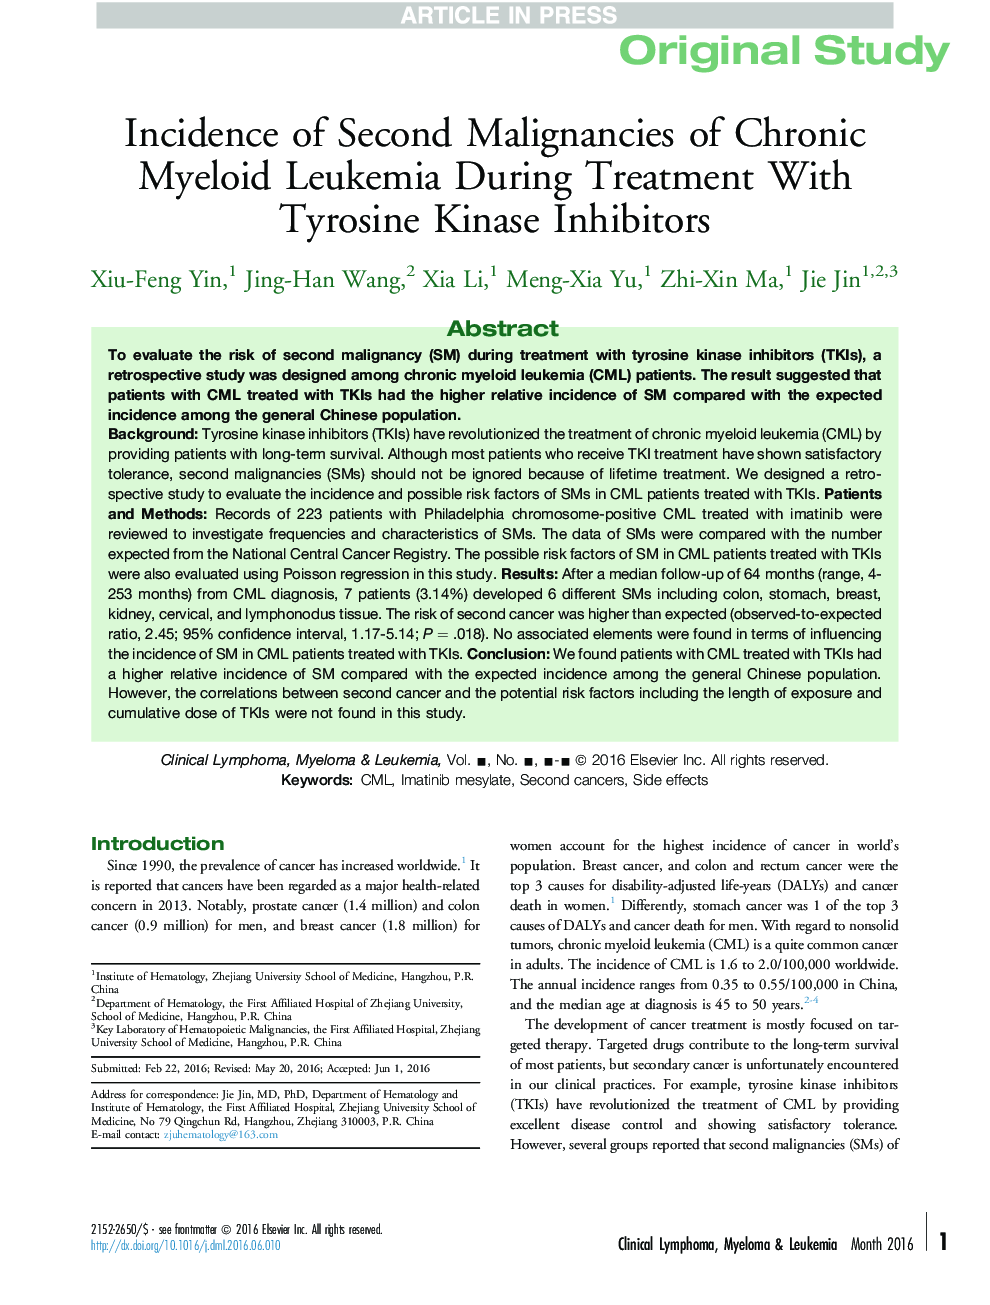 Incidence of Second Malignancies of Chronic Myeloid Leukemia During Treatment With Tyrosine Kinase Inhibitors